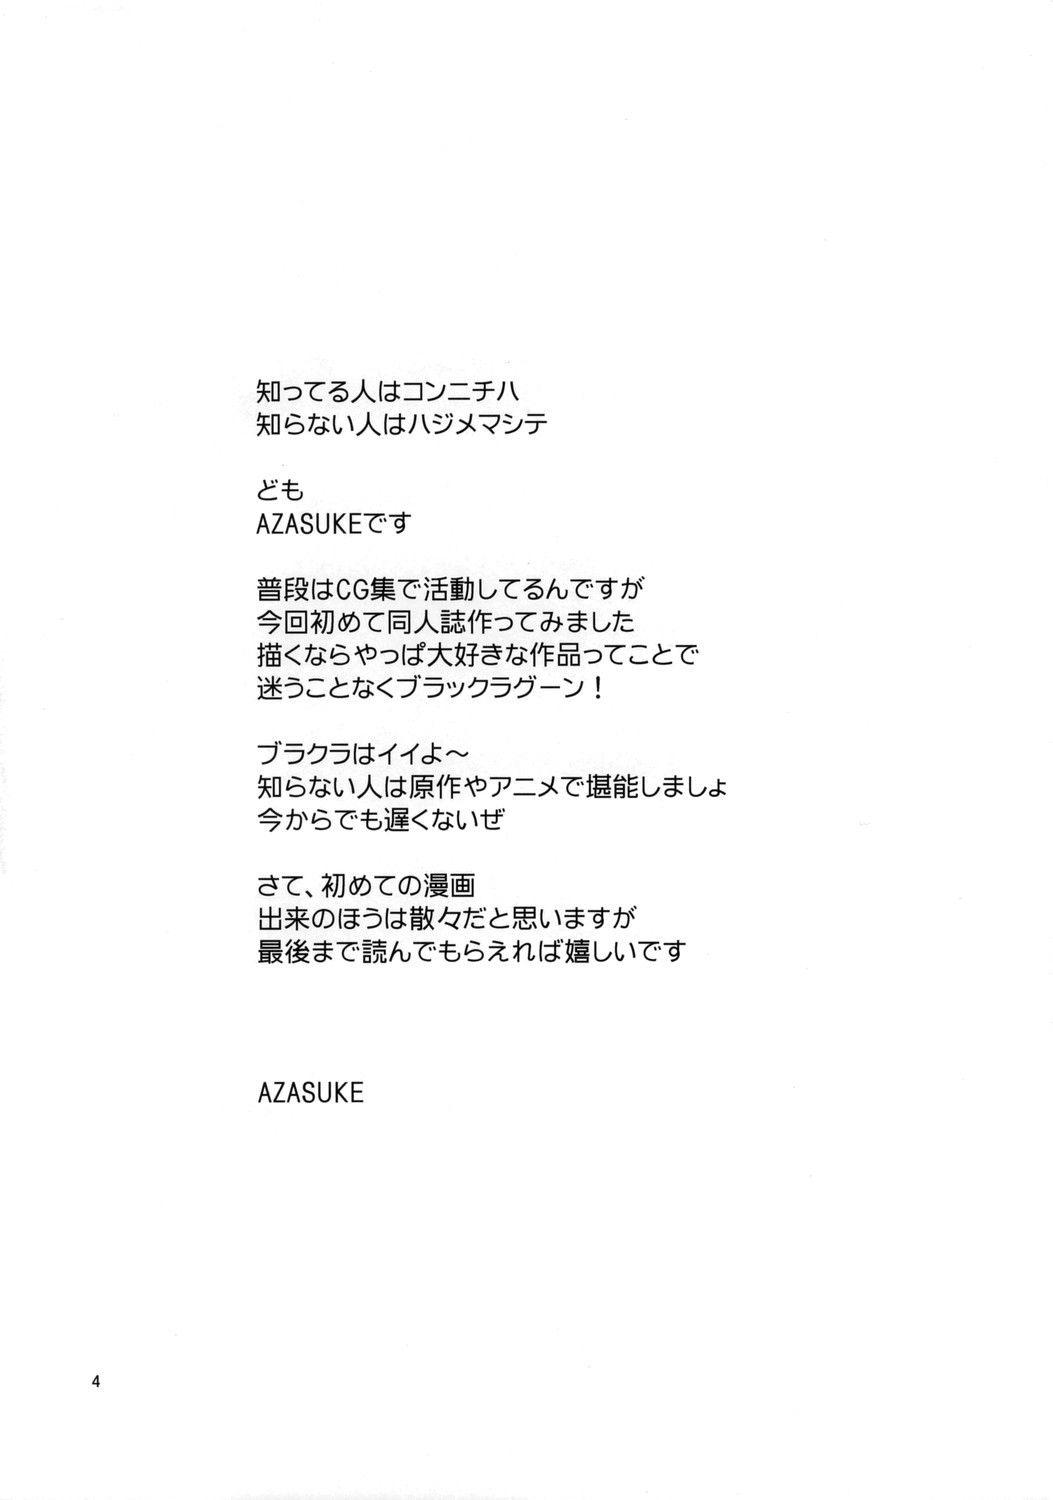 [Azasuke Wind] Distorted Love (Black Lagoon) (English) [AZASUKE WIND] Distorted Love (ブラック・ラグーン) [英訳]